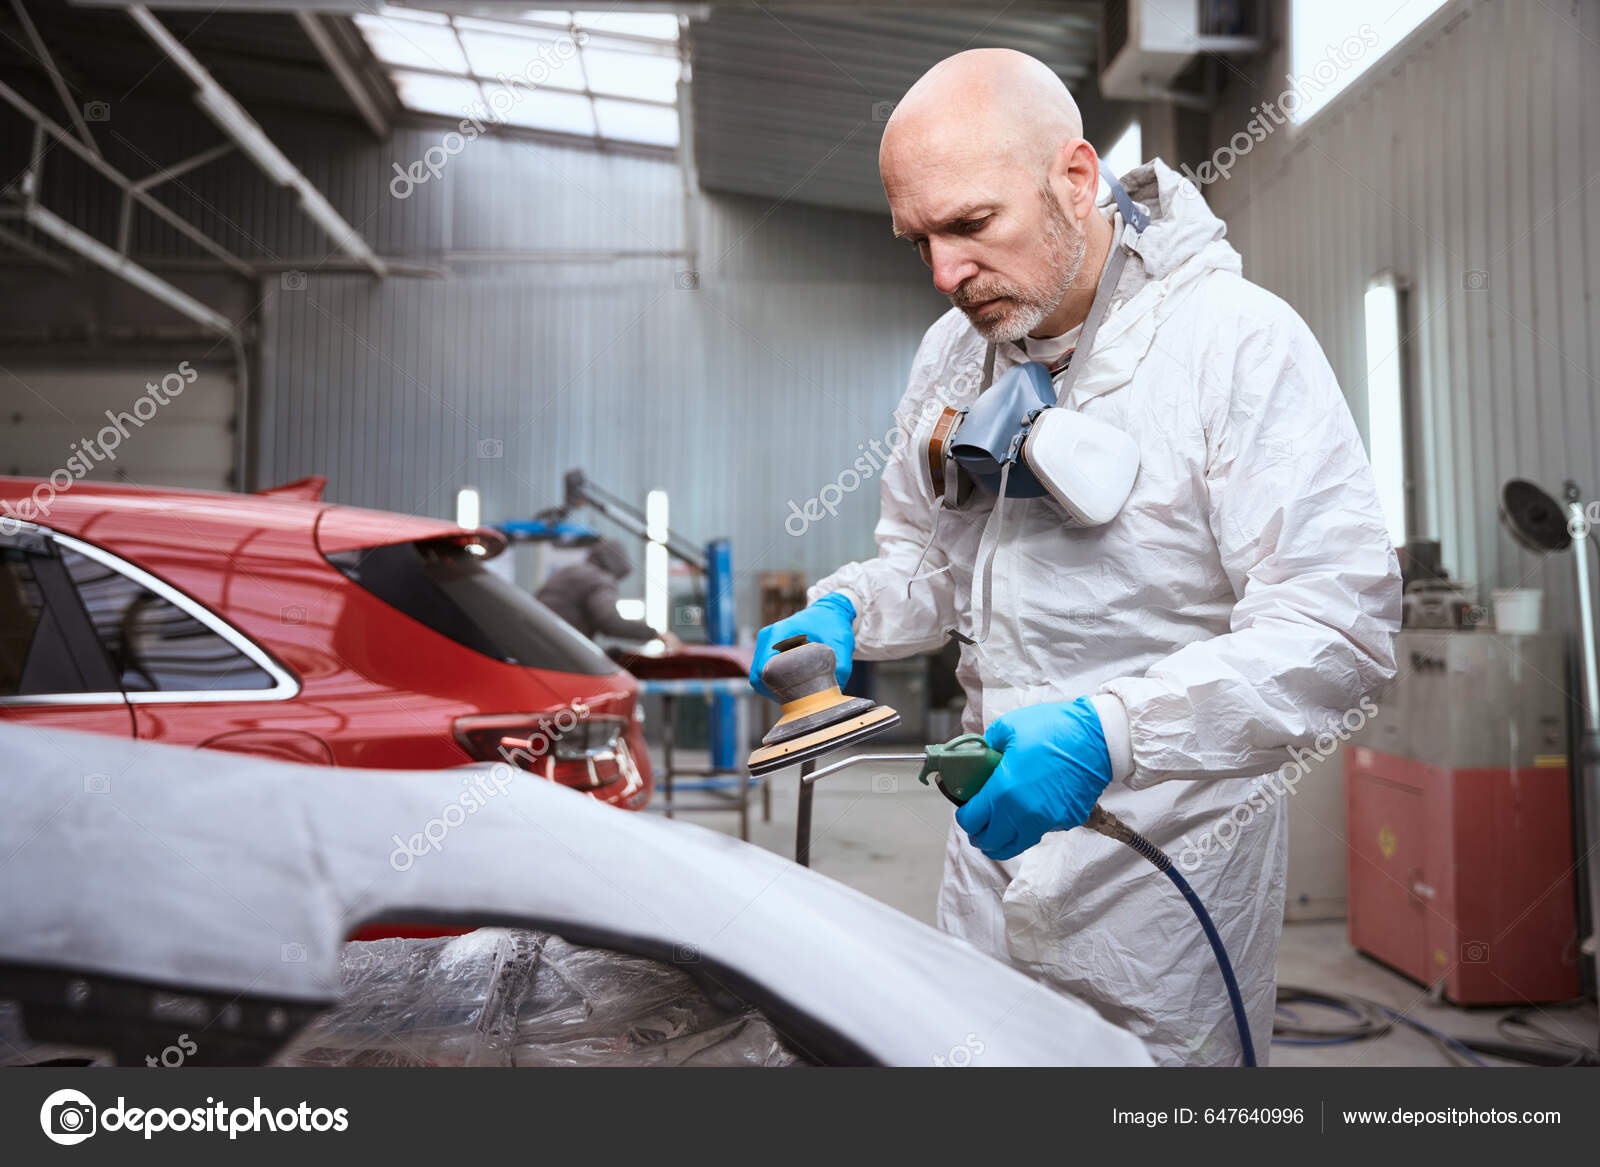 Gant pour nettoyage de voiture en caoutchouc - Tech cars – Tech - cars